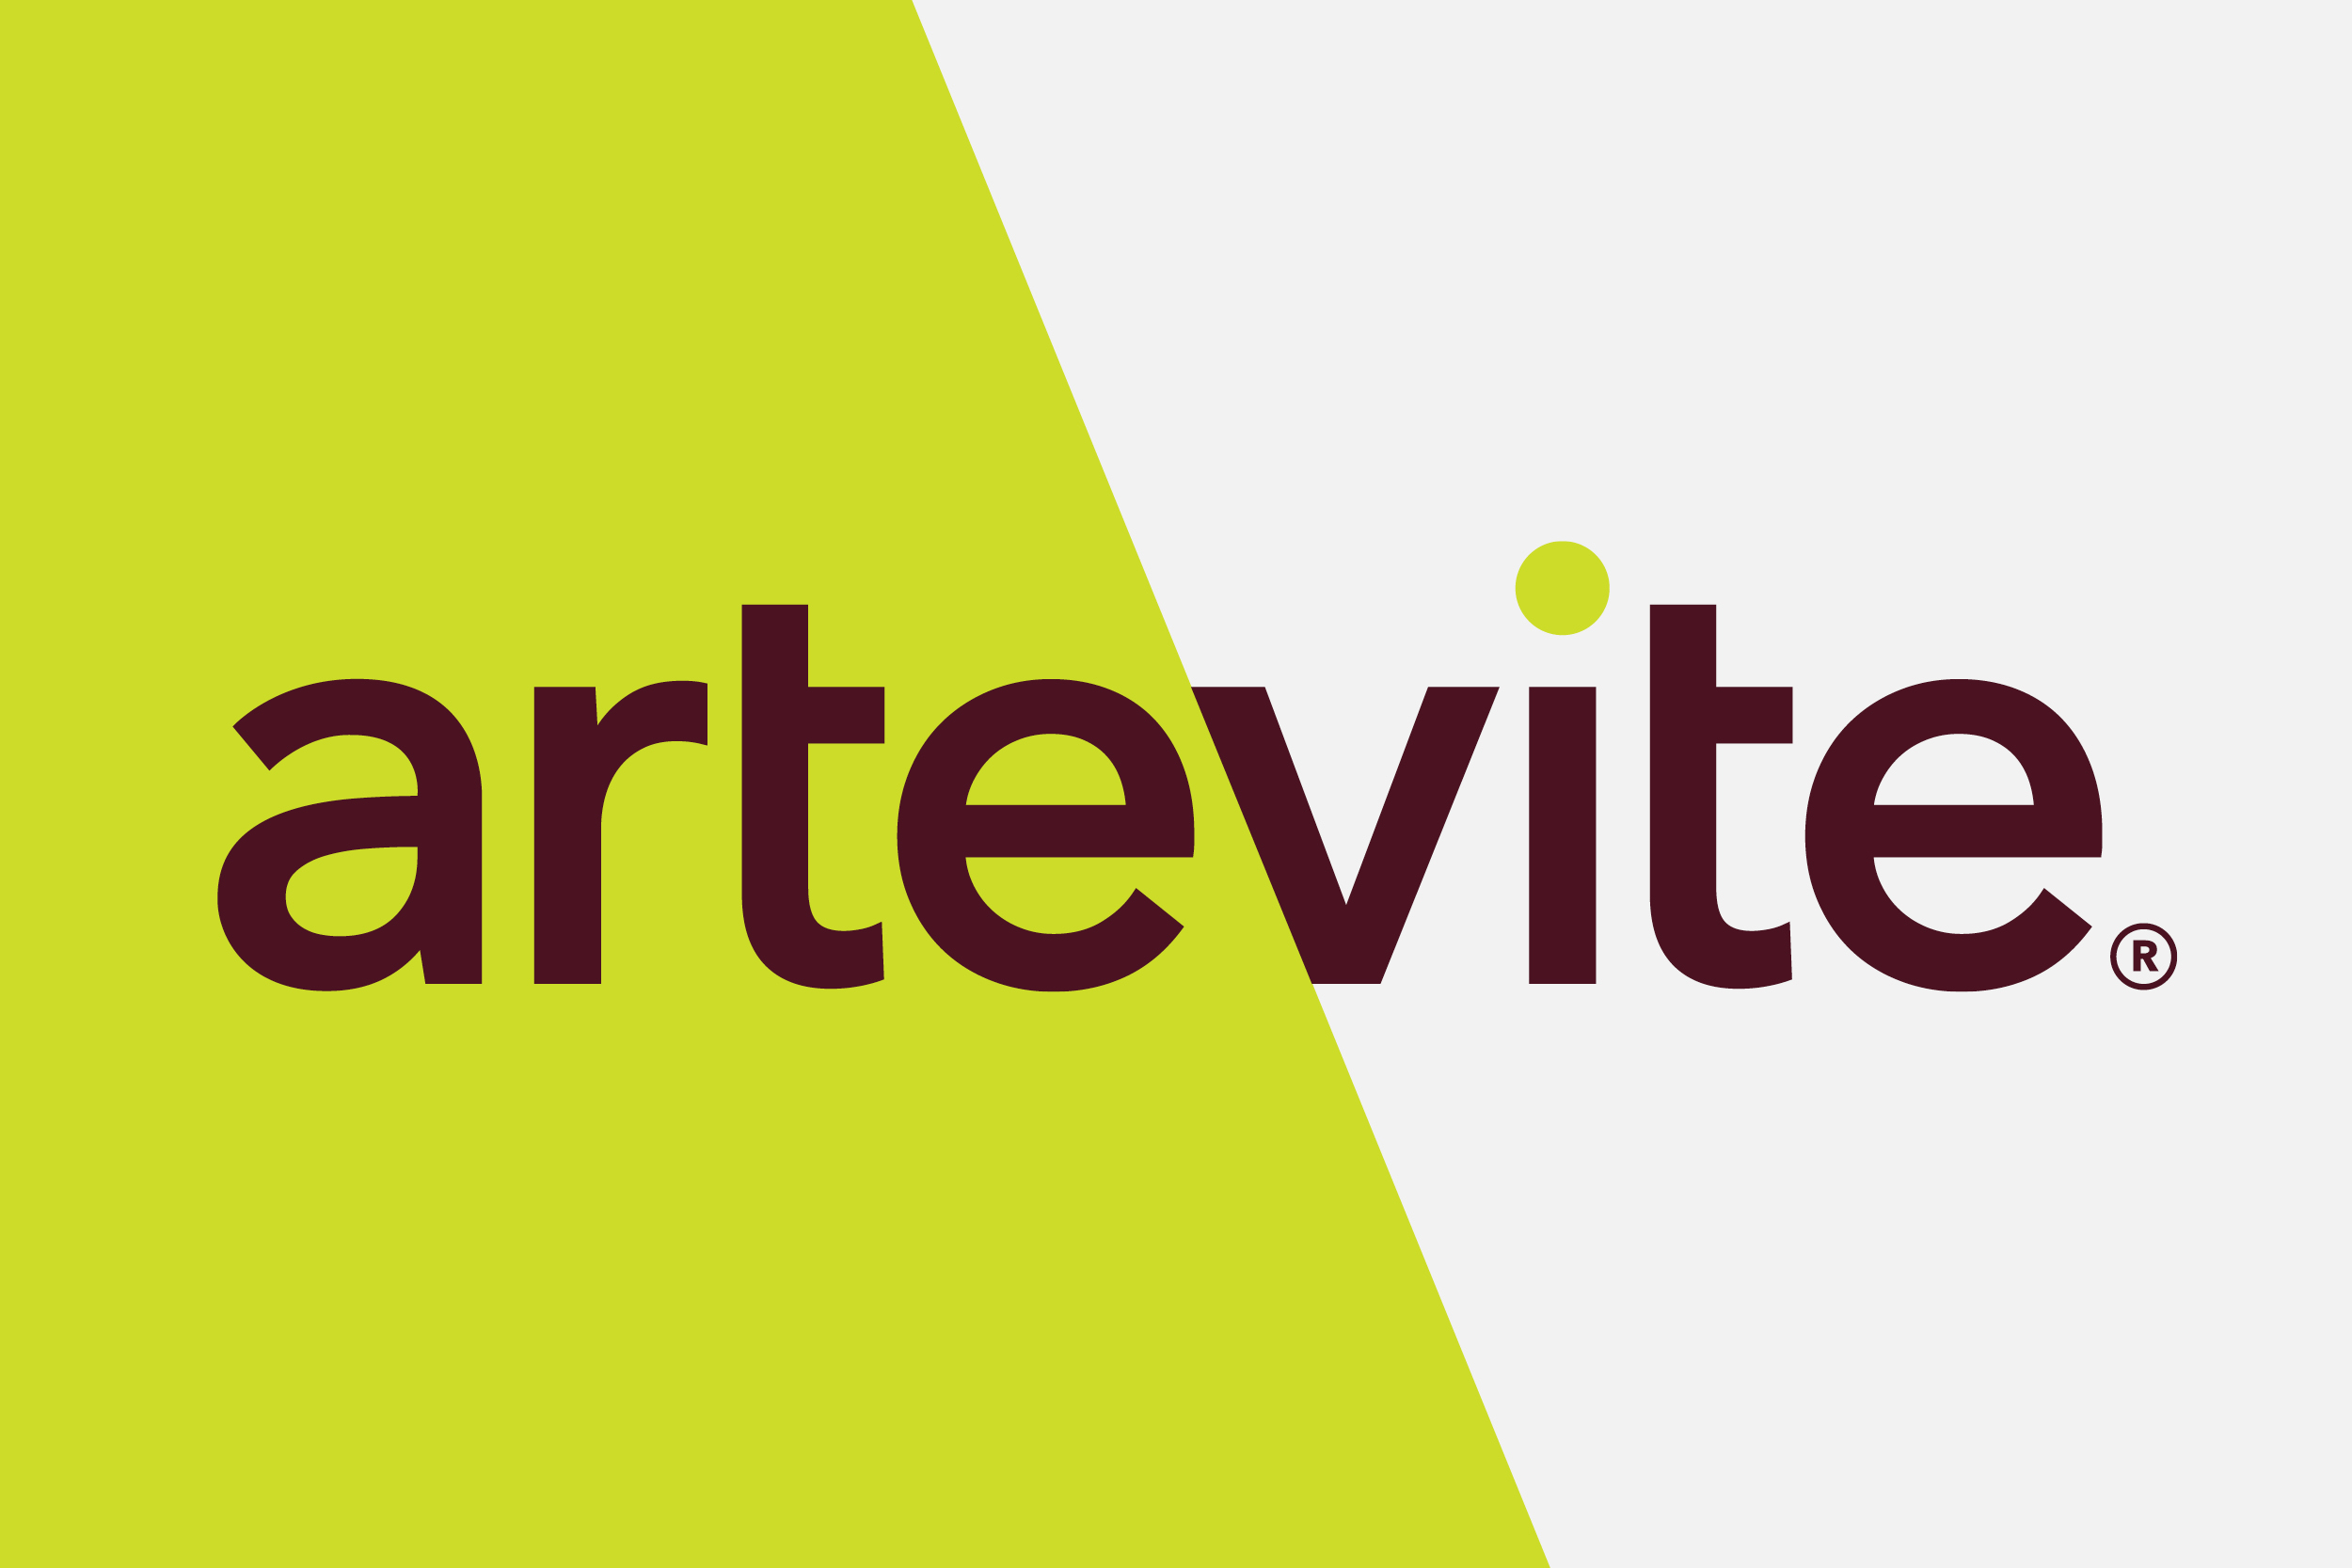 The Artevite logo